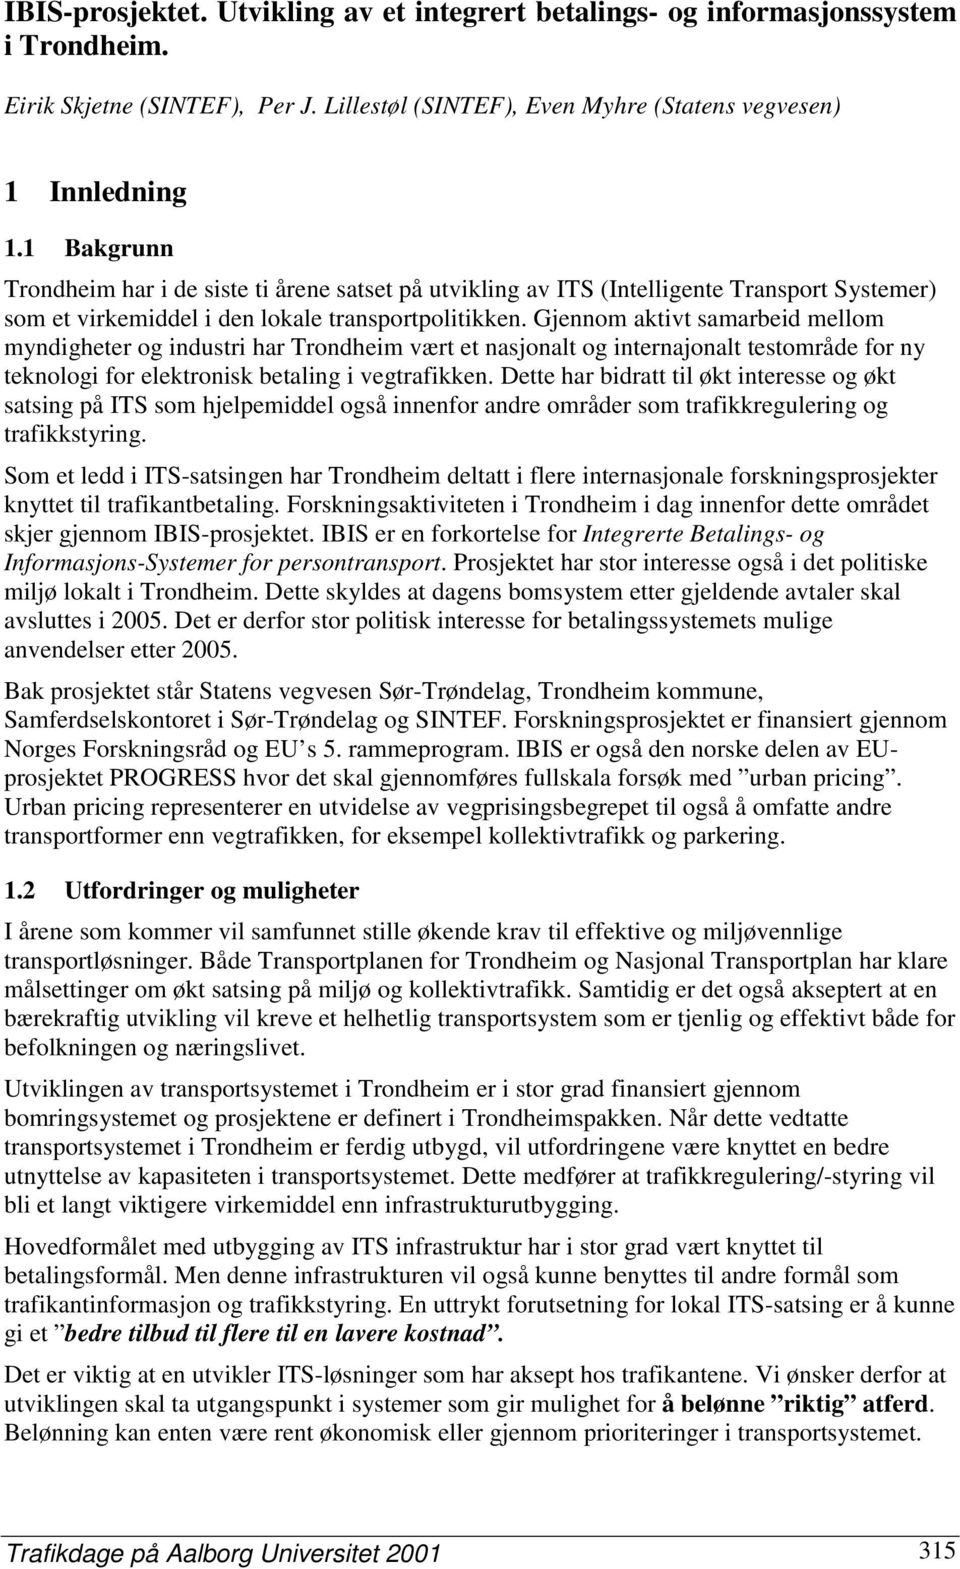 Gjennom aktivt samarbeid mellom myndigheter og industri har Trondheim vært et nasjonalt og internajonalt testområde for ny teknologi for elektronisk betaling i vegtrafikken.